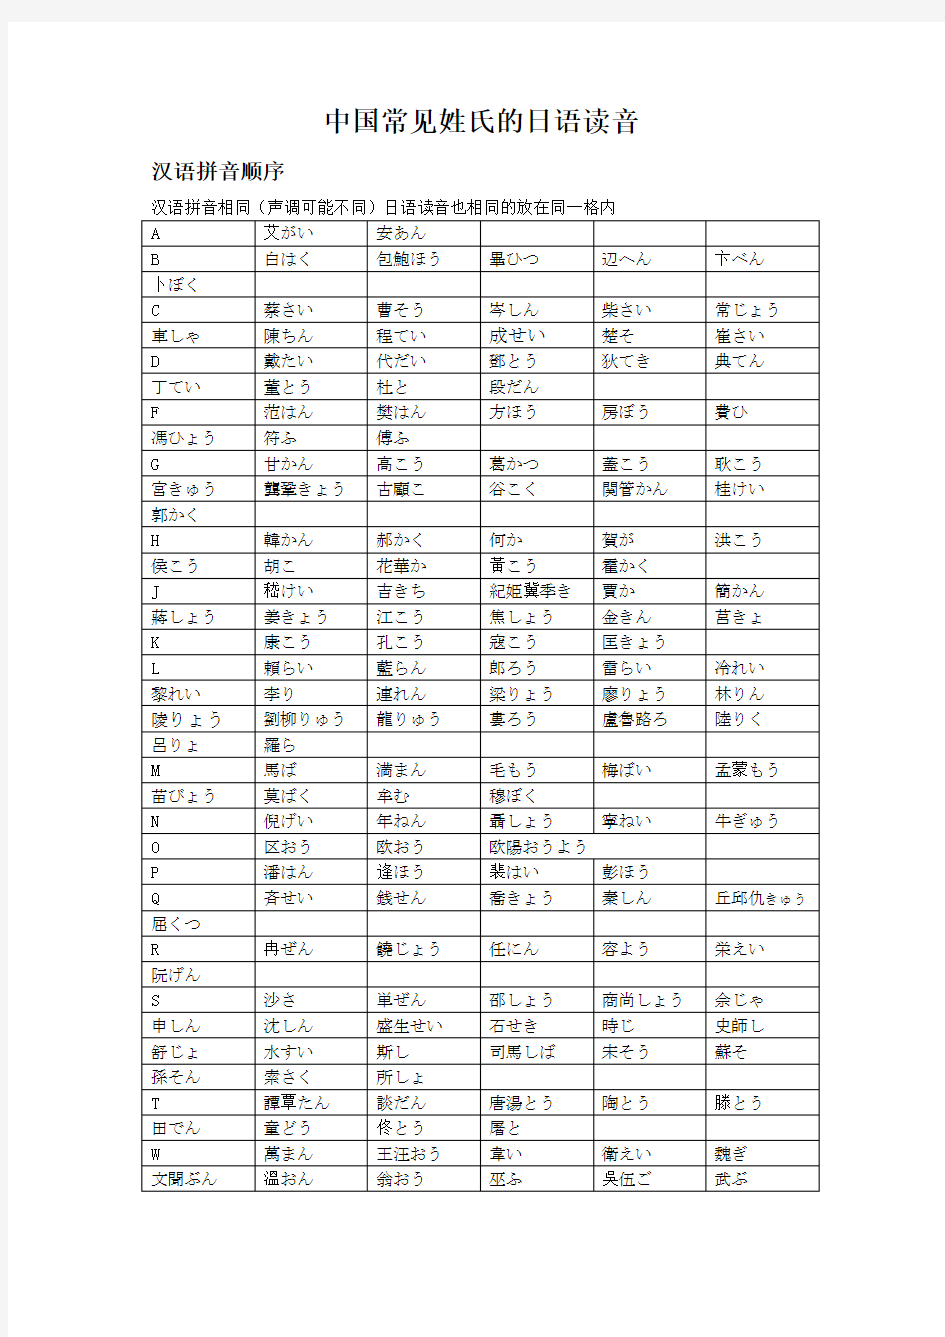 中国常见姓氏的日语读音